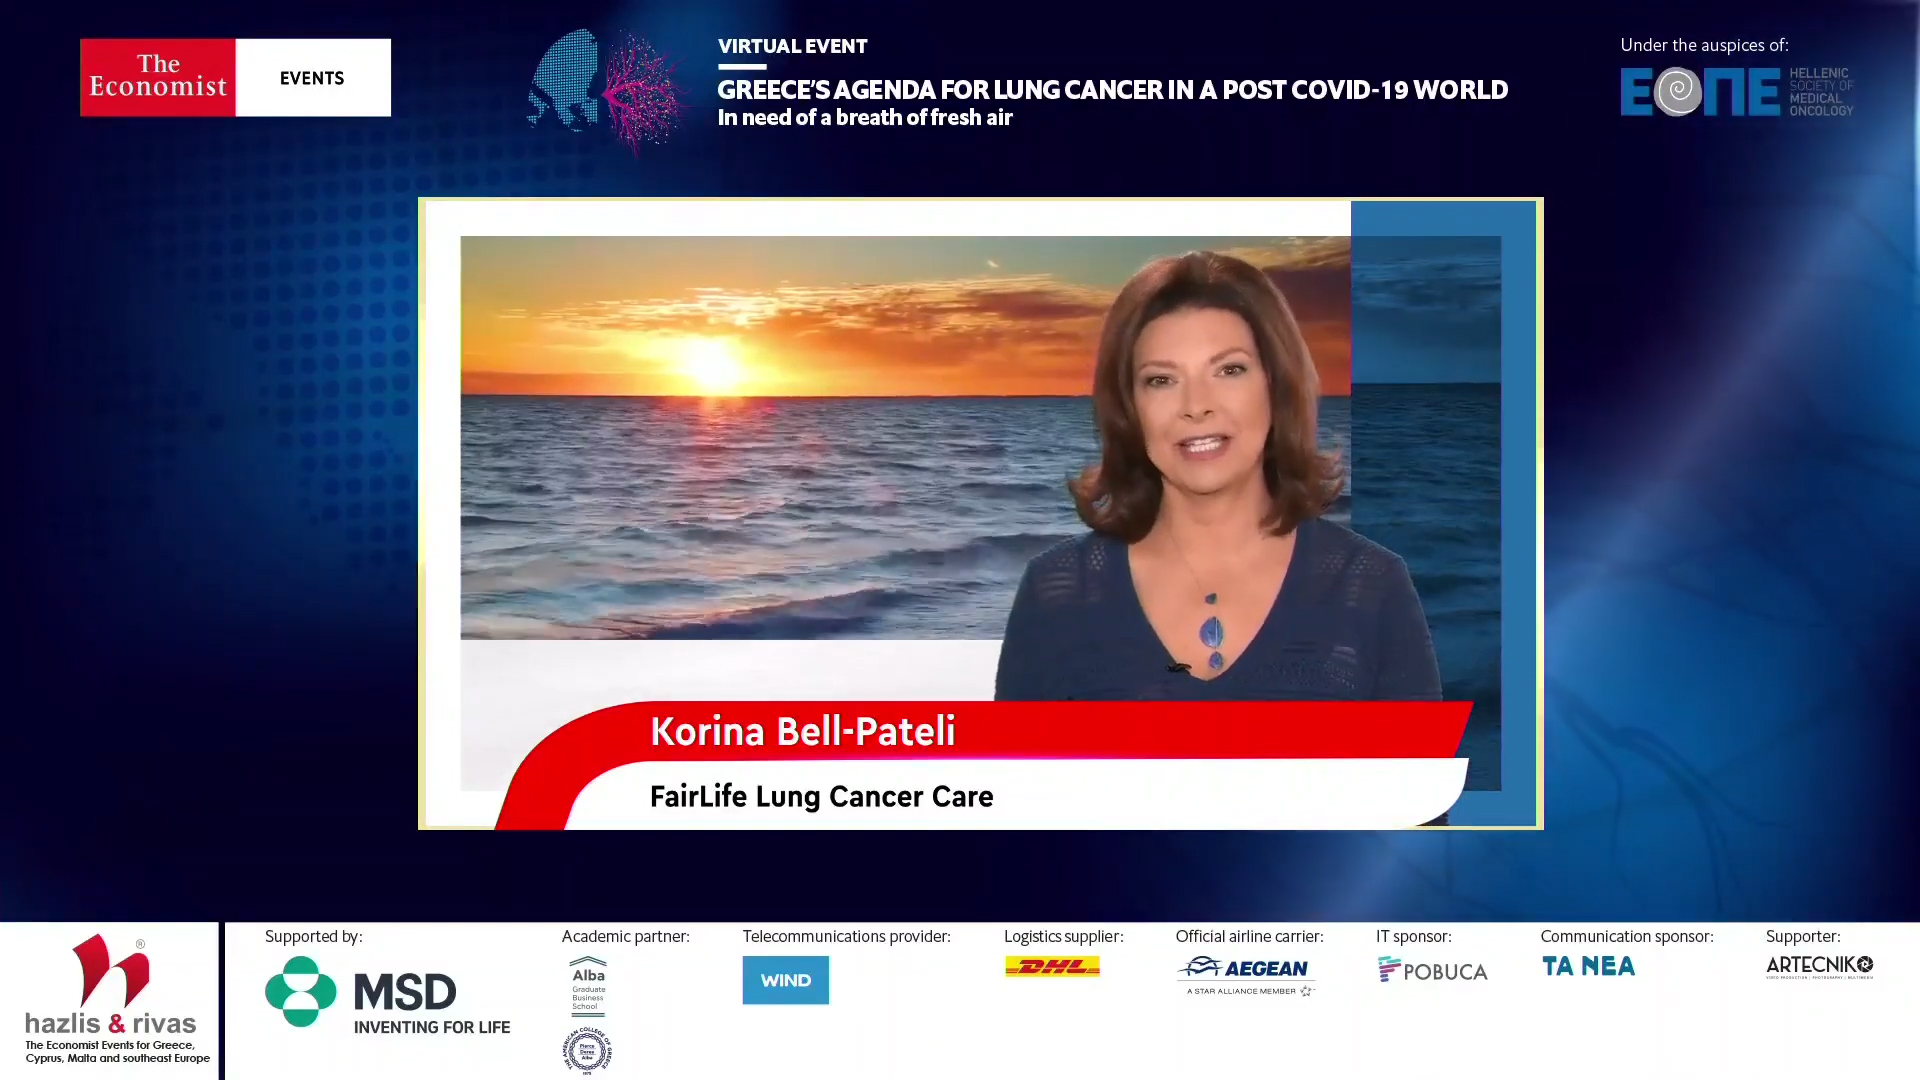 Κορίνα Πατέλη-Bell: Μπορούμε σήμερα να ανοίξουμε μια ουσιαστική συζήτηση για τον καρκίνο του πνεύμονα στην Ελλάδα